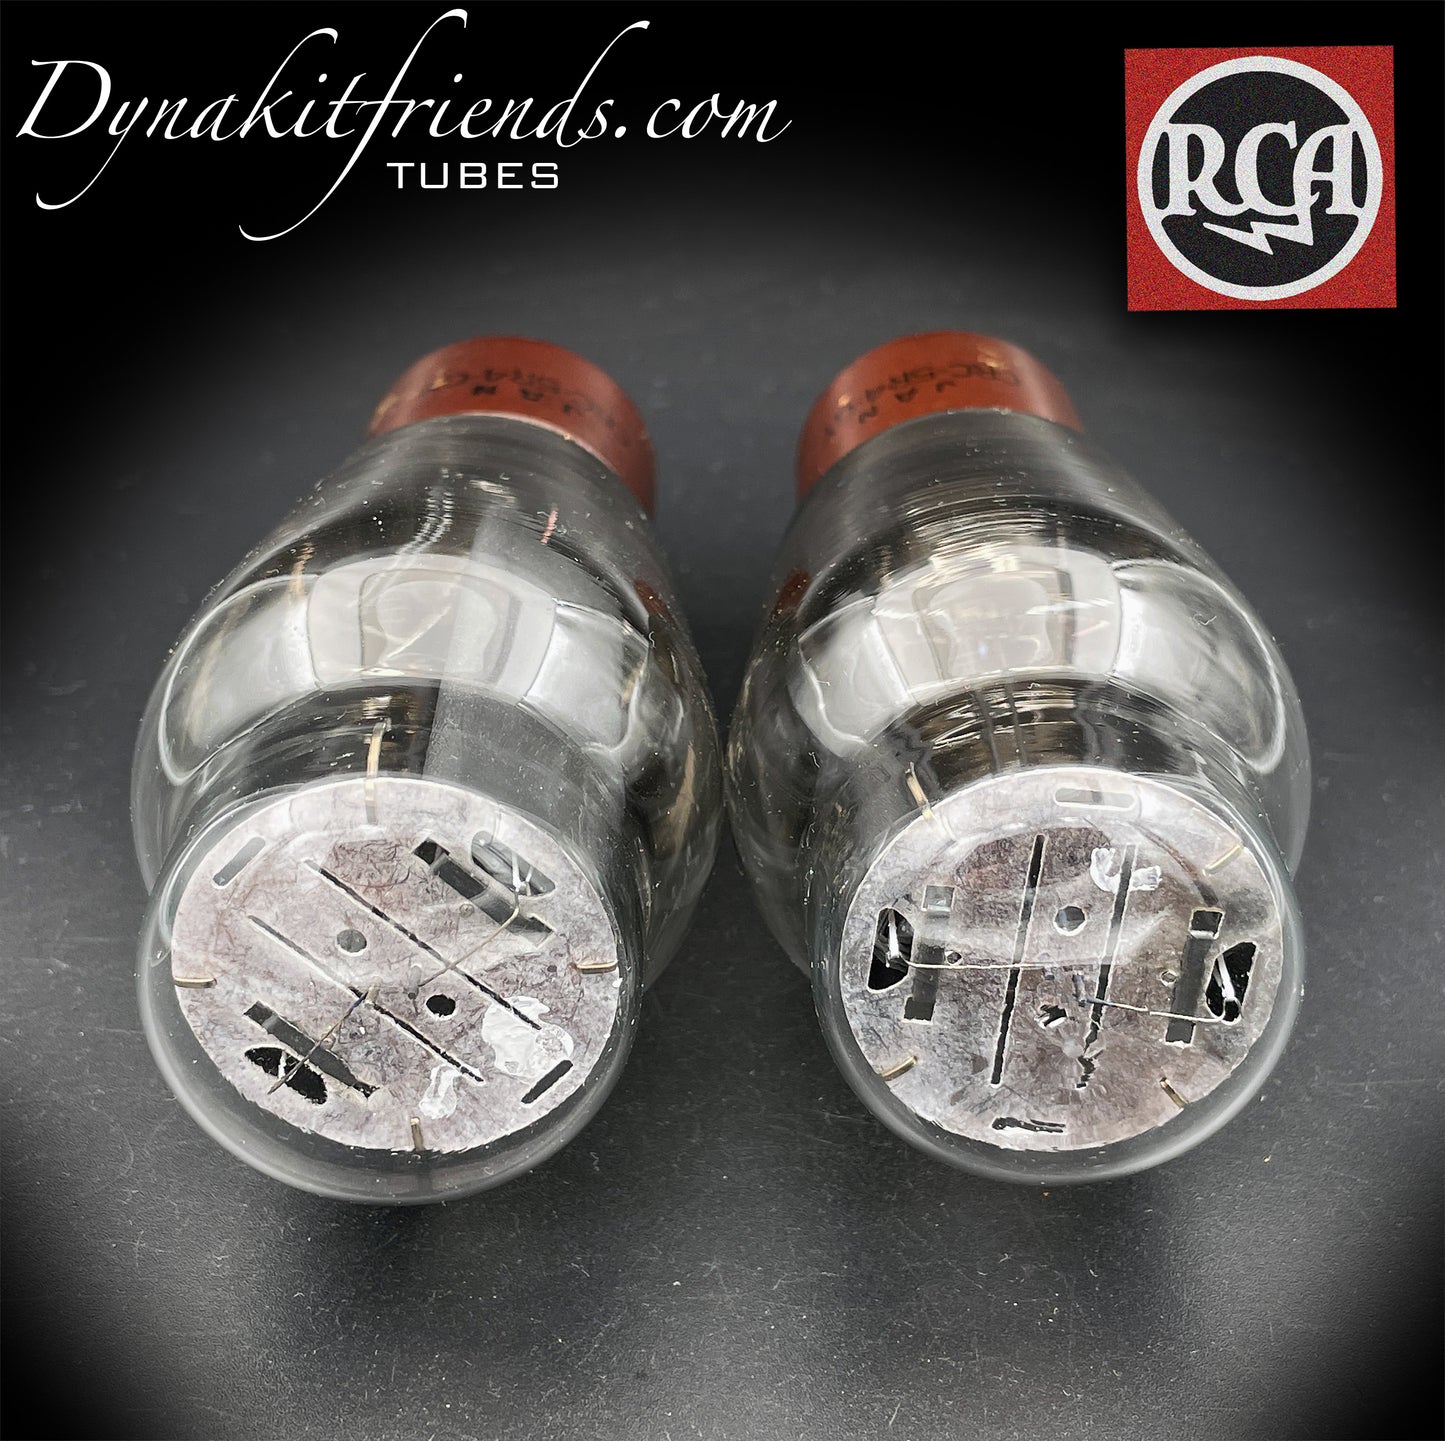 5R4GY JAN (CV717) Rectificadores de tubos combinados con placa negra RCA de doble fondo cuadrado Getter fabricados en EE. UU. '44